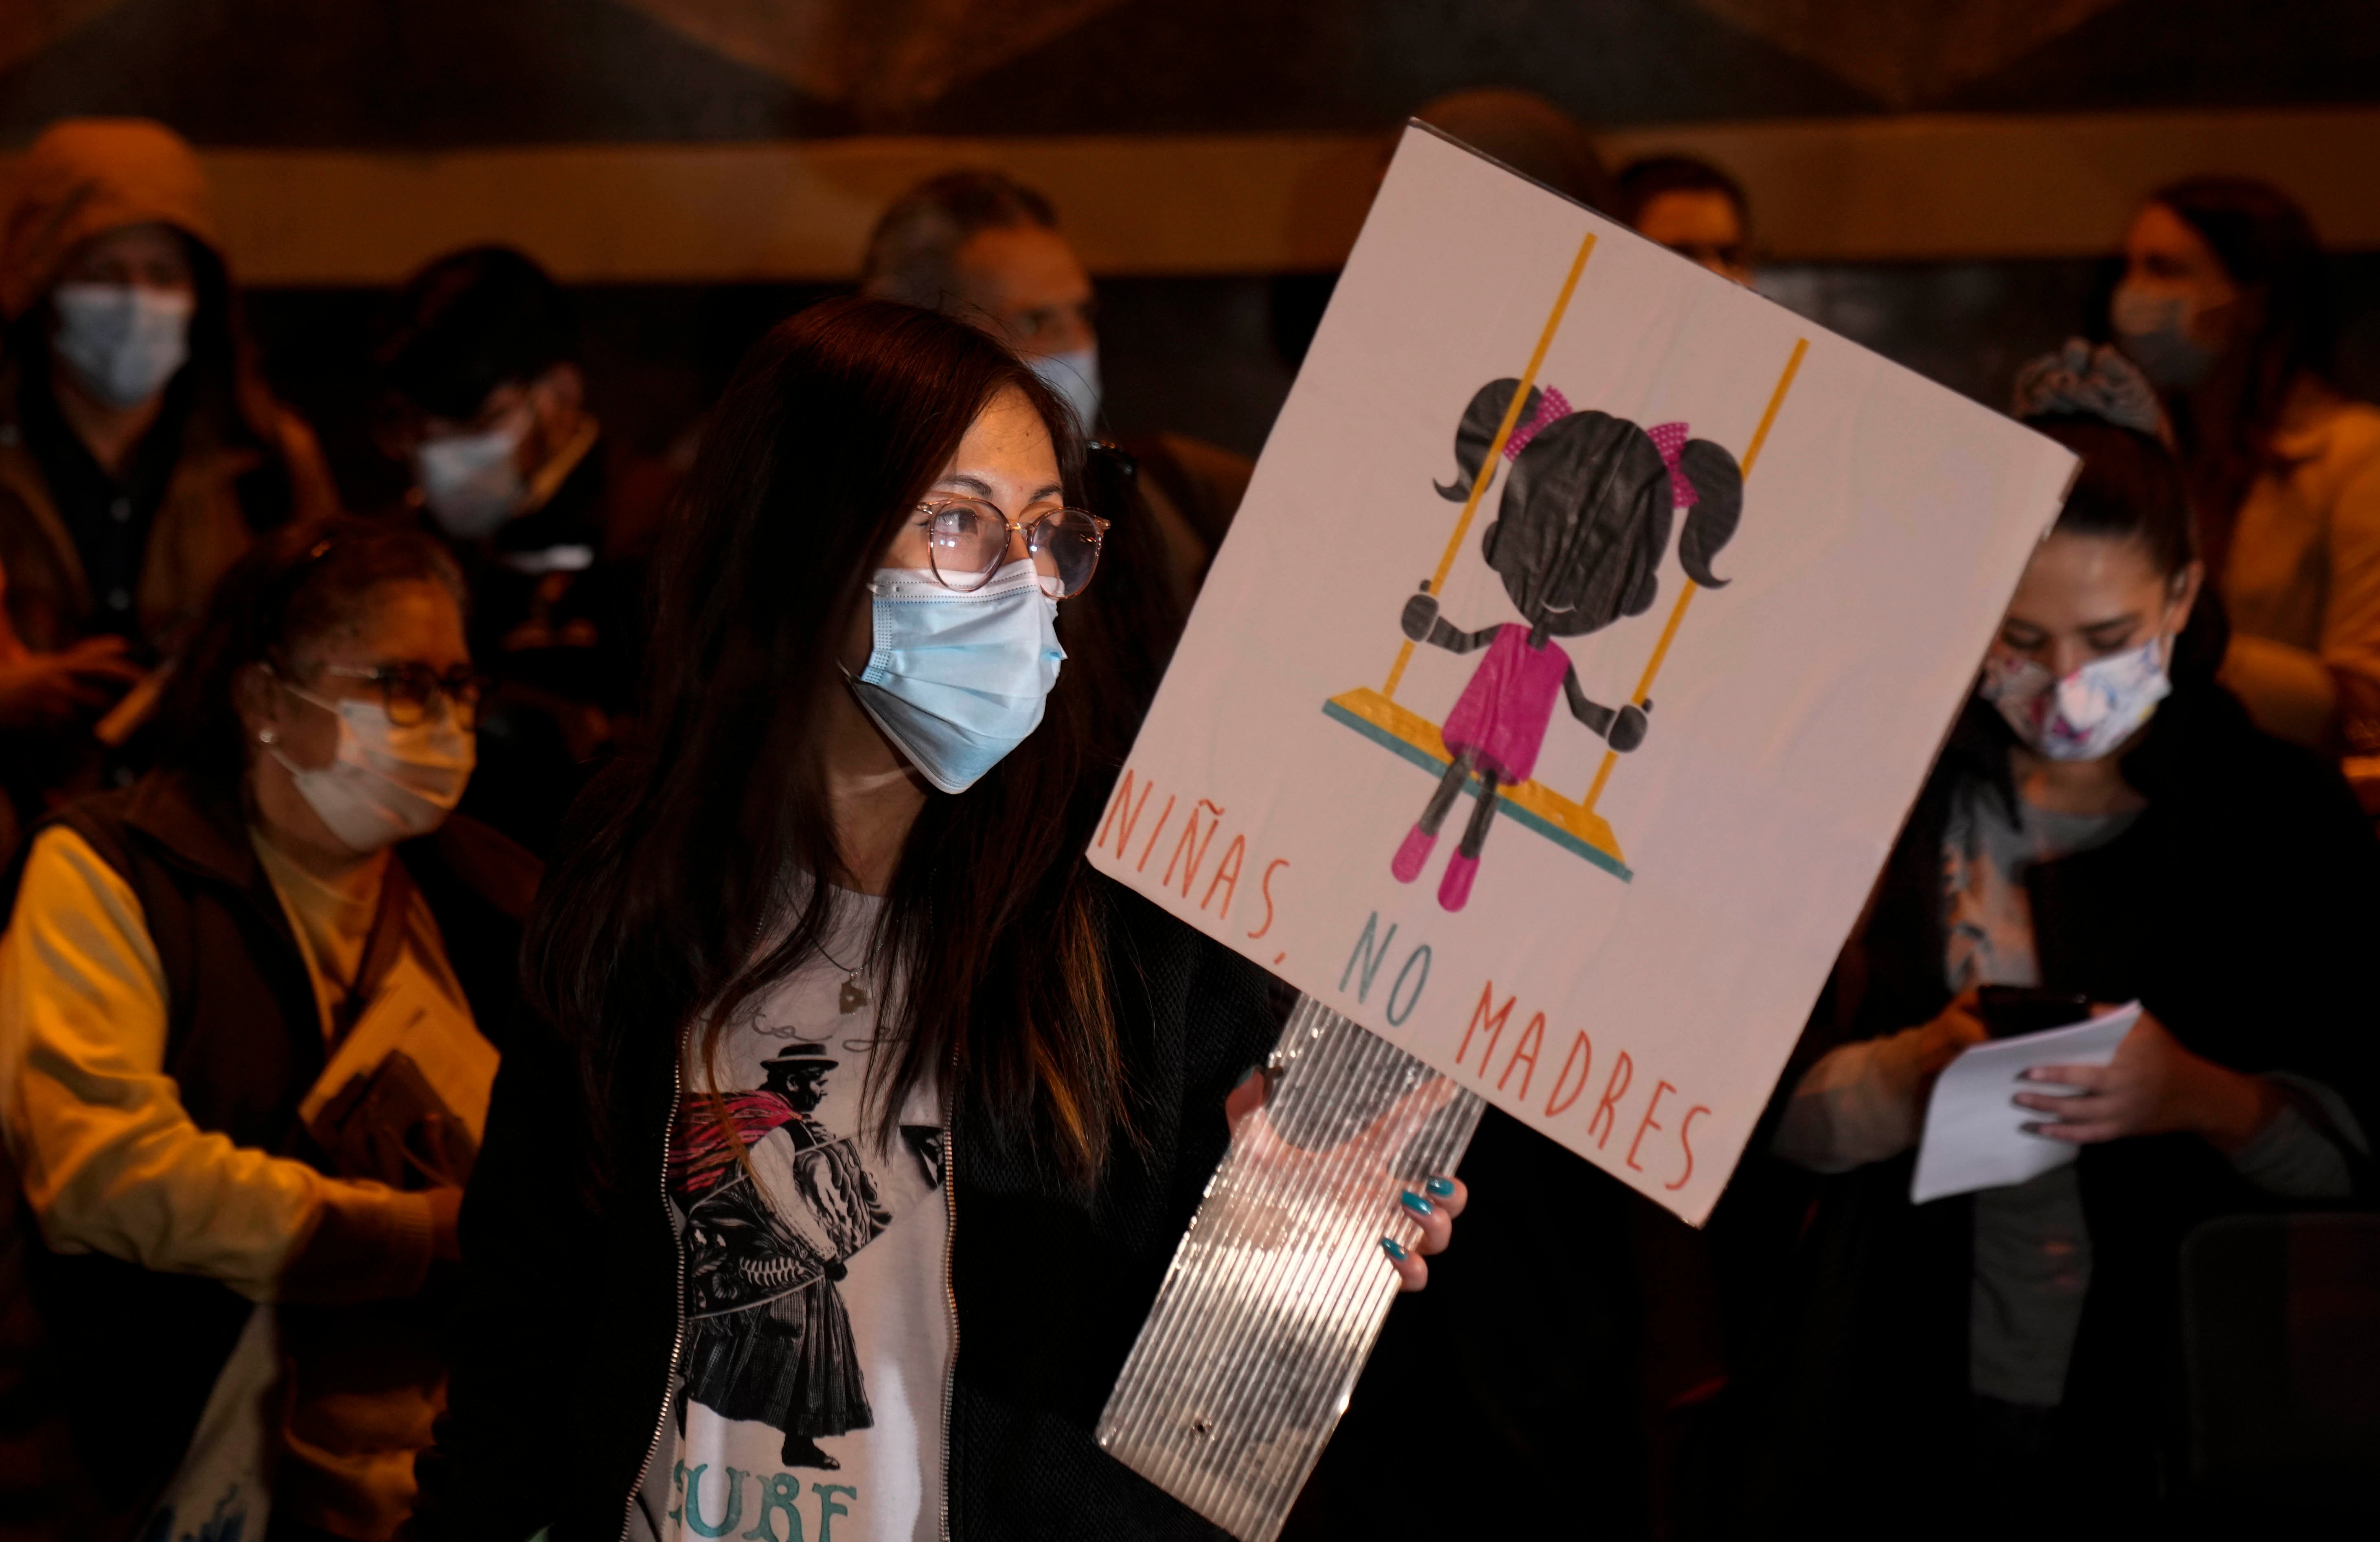 Una mujer sostiene una pancarta que dice "Niñas, no madres", durante una manifestación por los derechos sexuales y reproductivos en La Paz, Bolivia, el 27 de octubre de 2021. El caso de una niña de 11 años que quedó embarazada tras ser violada repetidamente por un familiar reanudó el debate sobre el aborto en Bolivia.